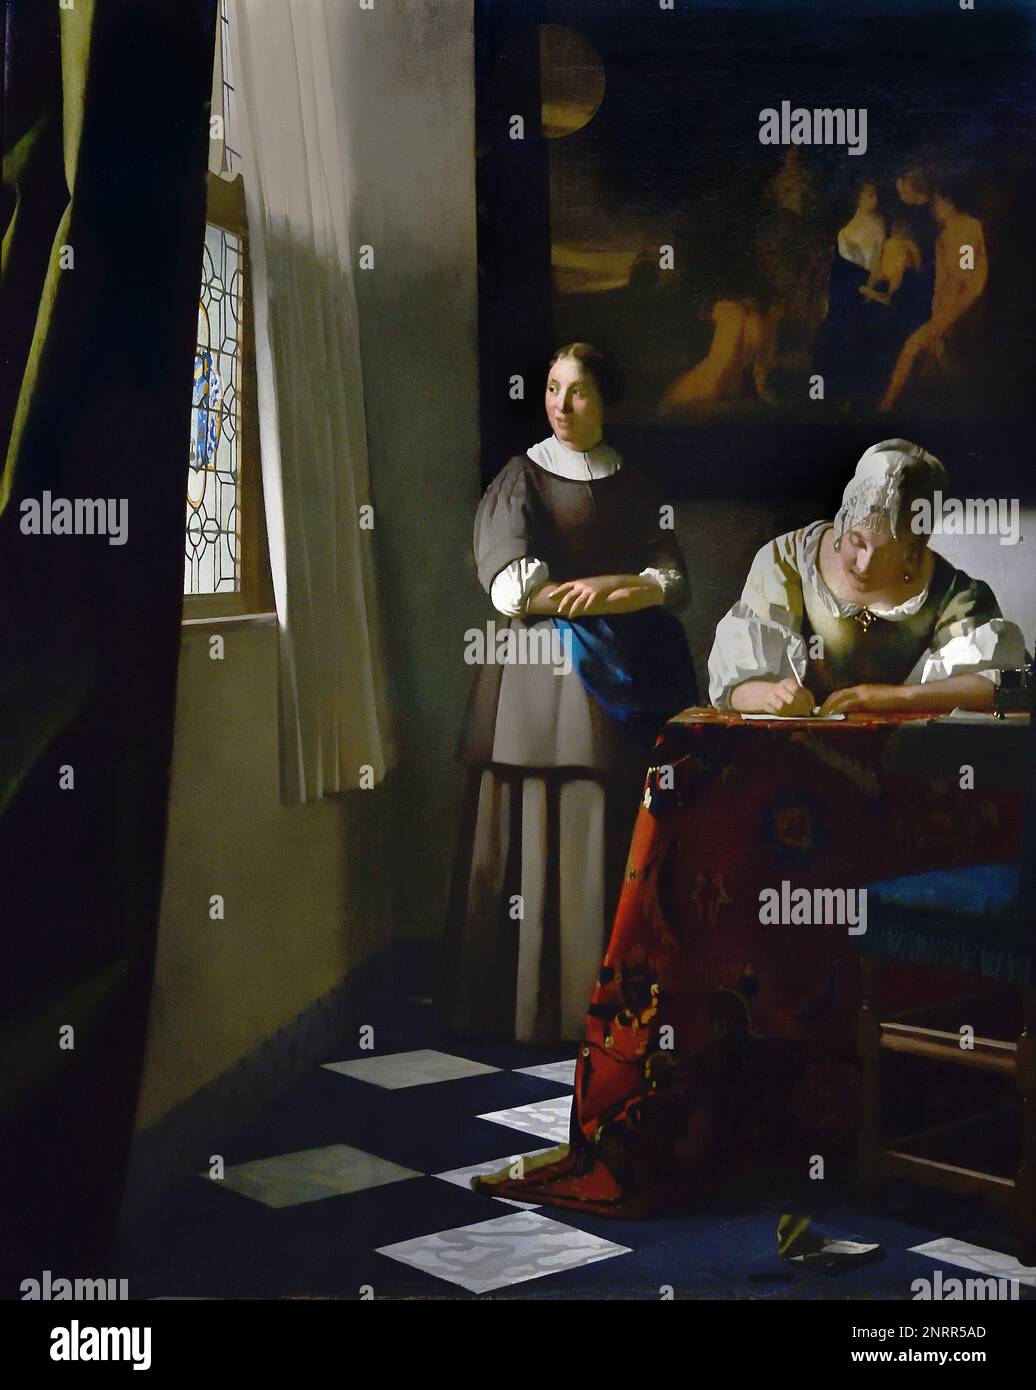 Frau, die mit ihrem Dienstmädchen einen Brief schreibt, von Johannes Vermeer oder Jan Vermeer 1632 - 1675, Delft, Niederlande, Niederländisch, Holland, (Holländischer Maler im Goldenen Zeitalter, einer der größten Maler des 17. Jahrhunderts. Bevorzugte zeitlose, gedämpfte Momente, bleibt rätselhaft, unnachahmliches Farbschema und verwirrender Lichtinhalt) Stockfoto